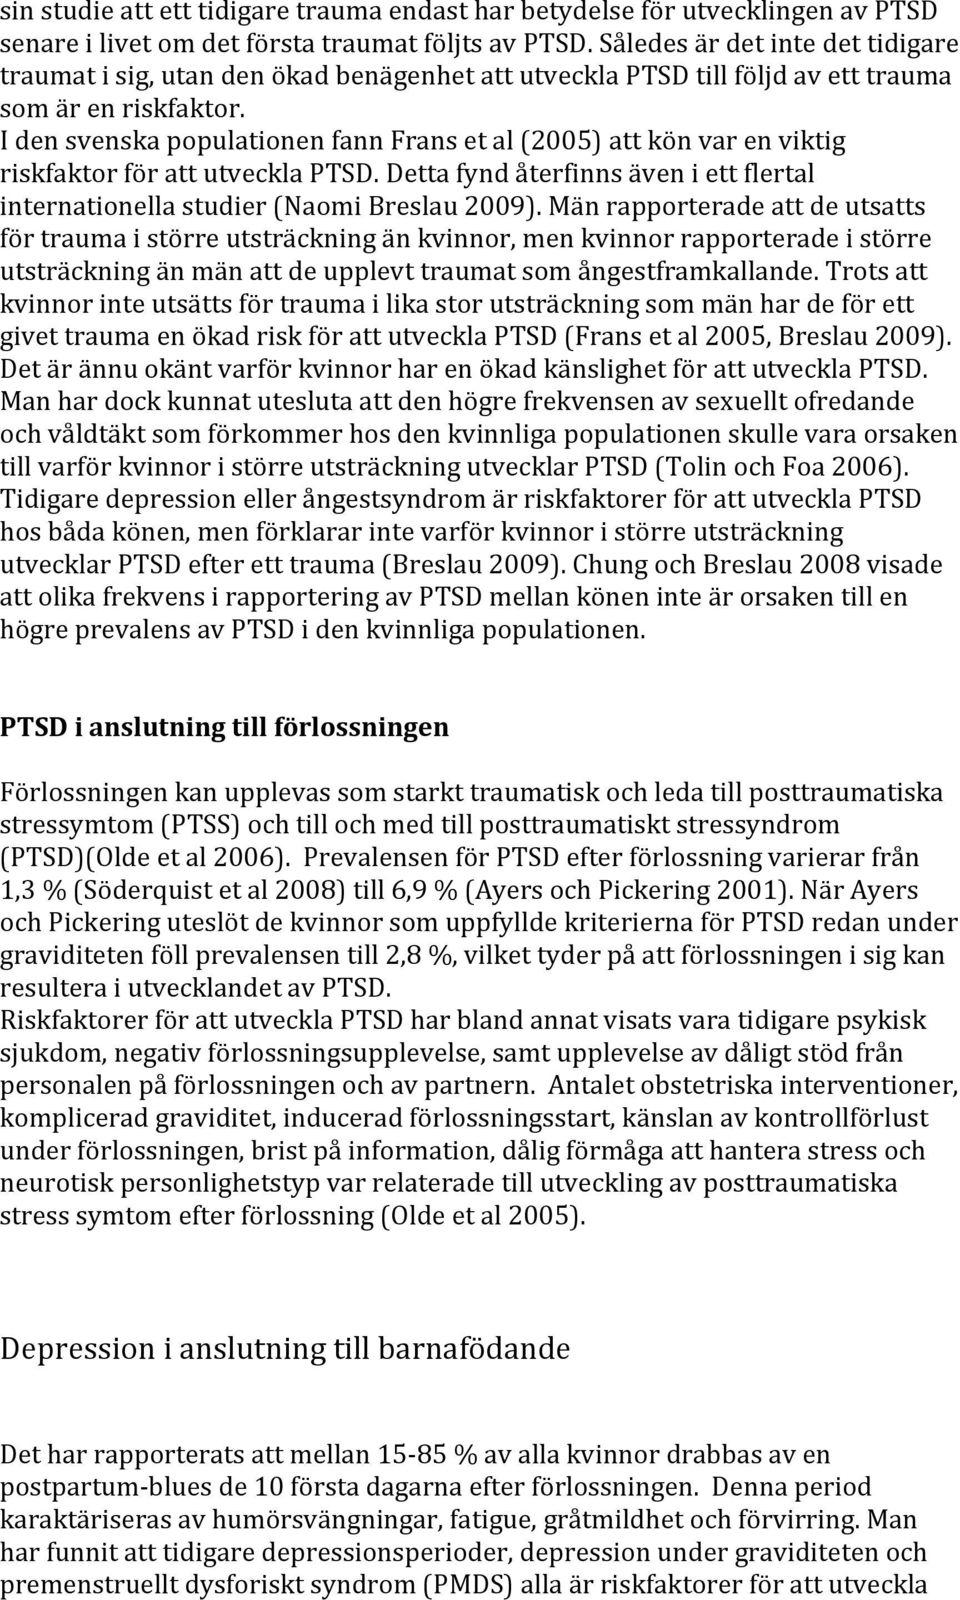 I den svenska populationen fann Frans et al (2005) att kön var en viktig riskfaktor för att utveckla PTSD. Detta fynd återfinns även i ett flertal internationella studier (Naomi Breslau 2009).